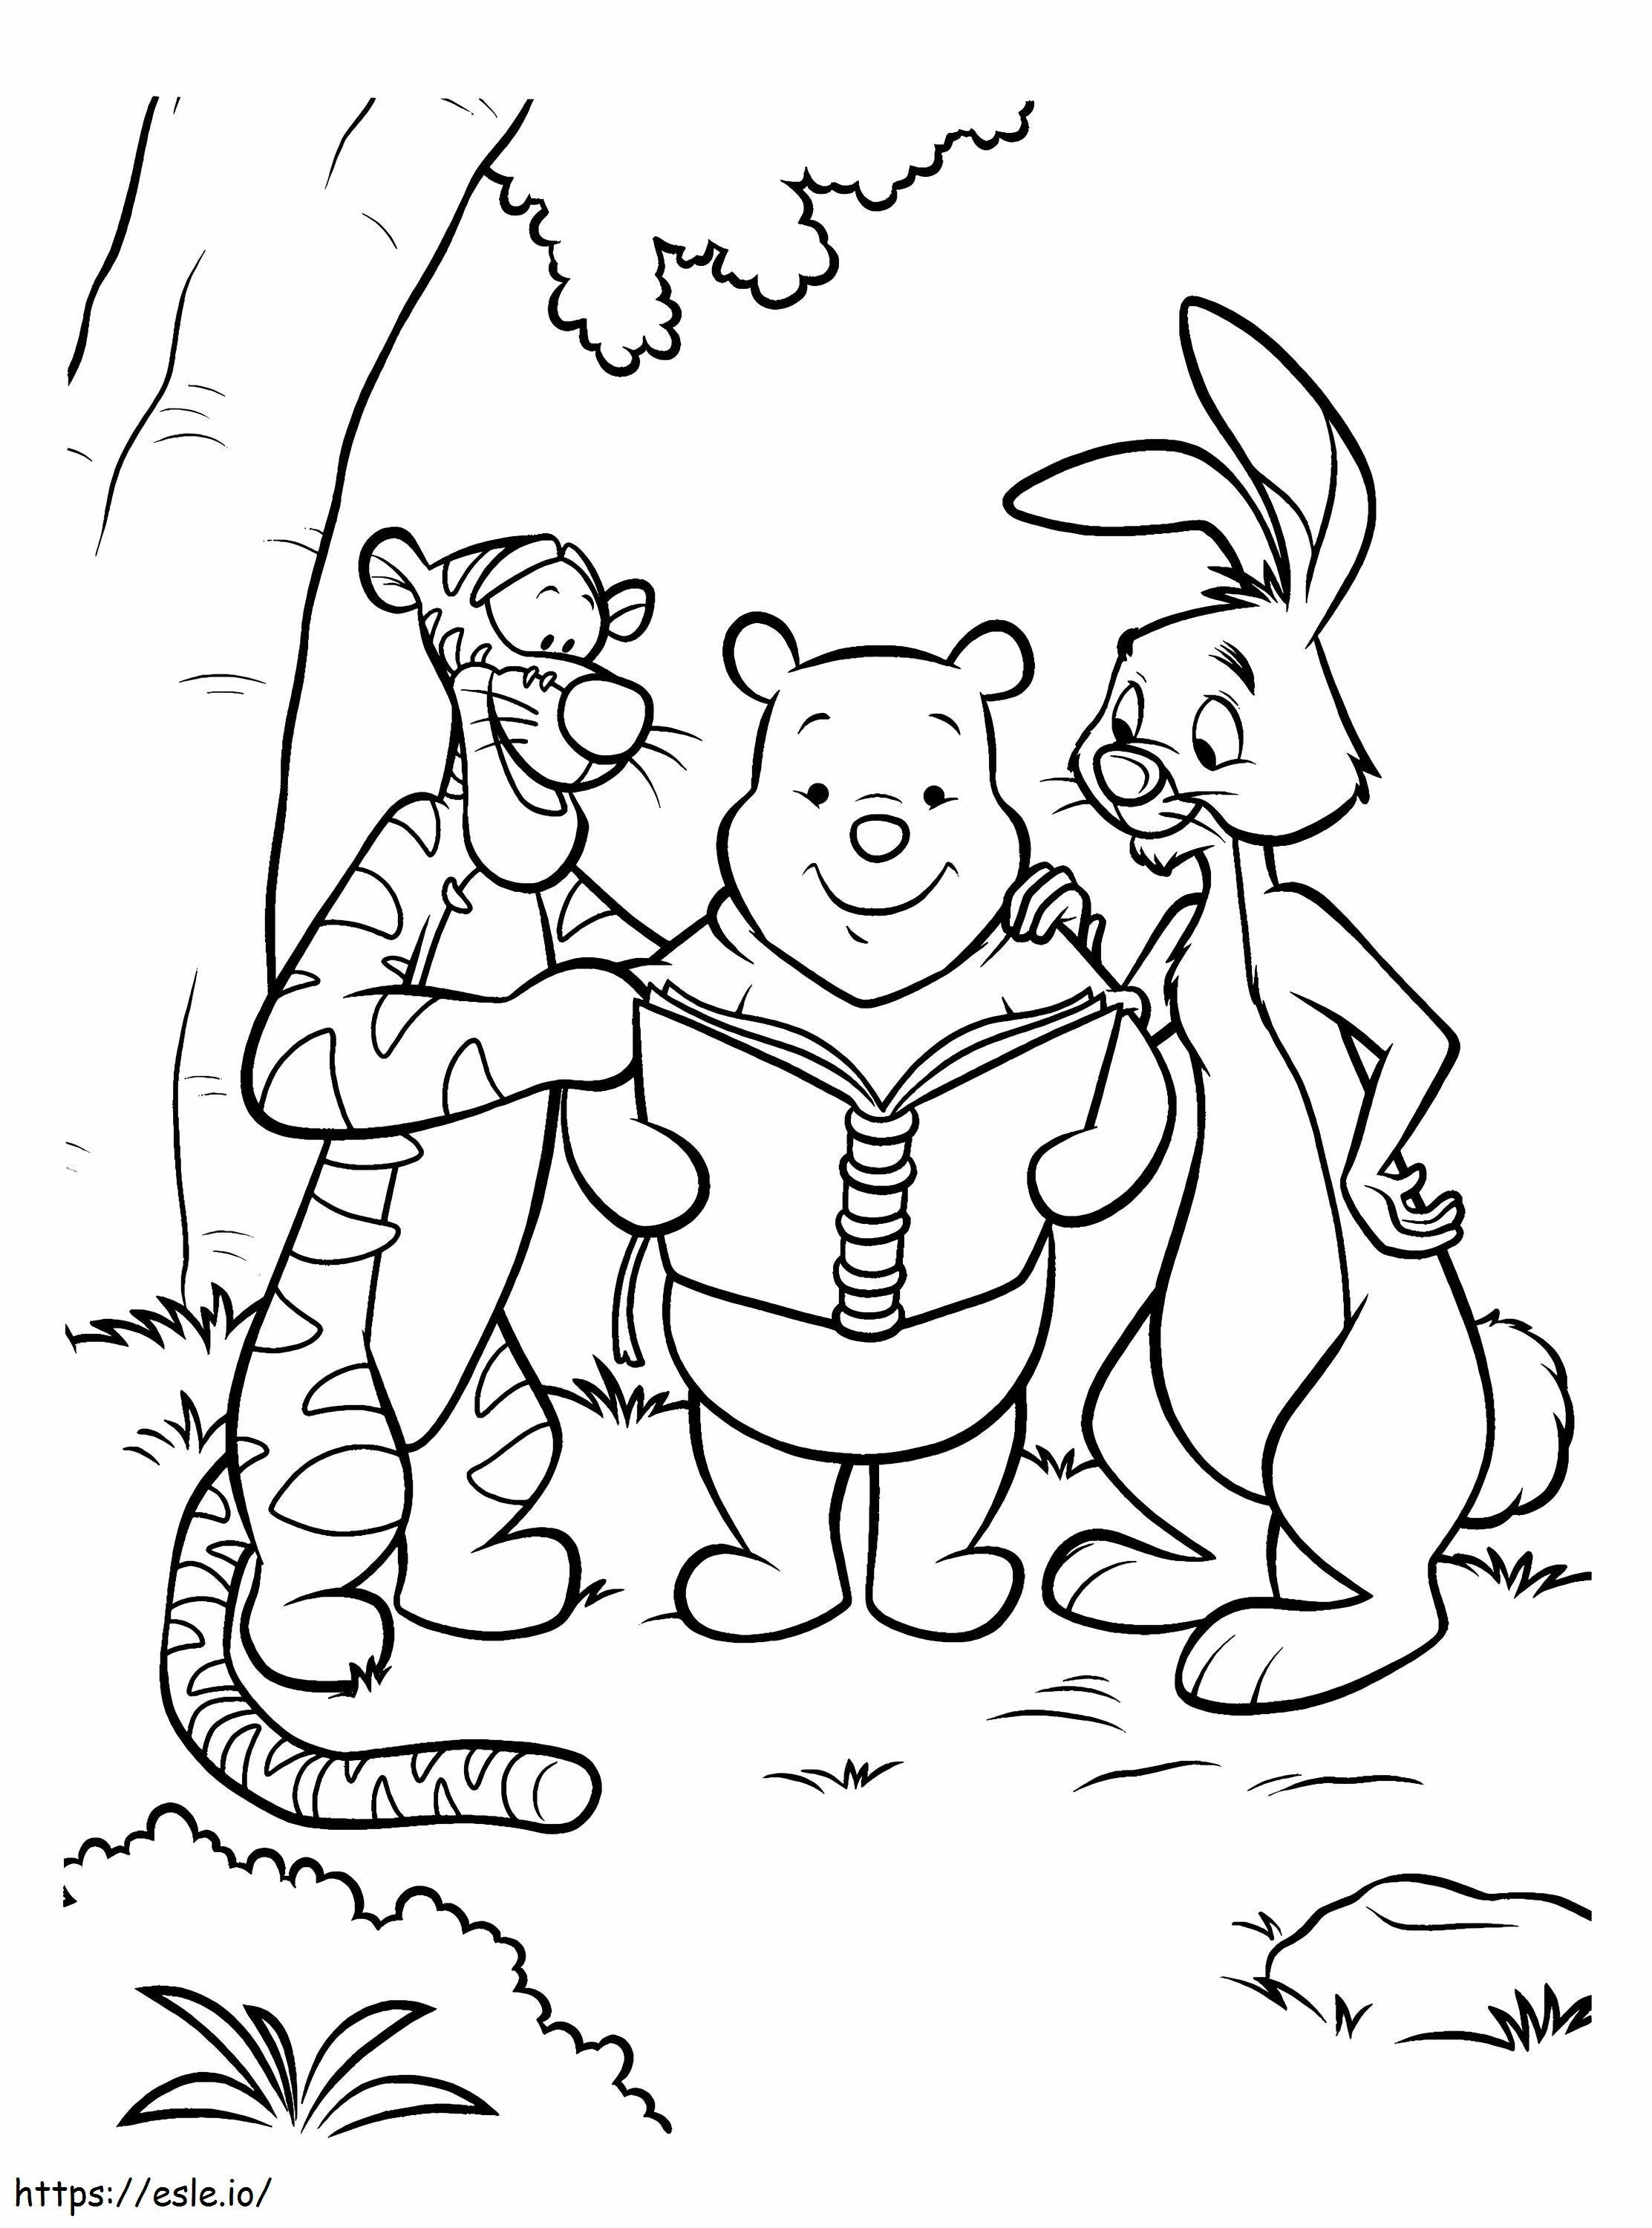 Lesung und Freunde von Winnie De Pooh ausmalbilder